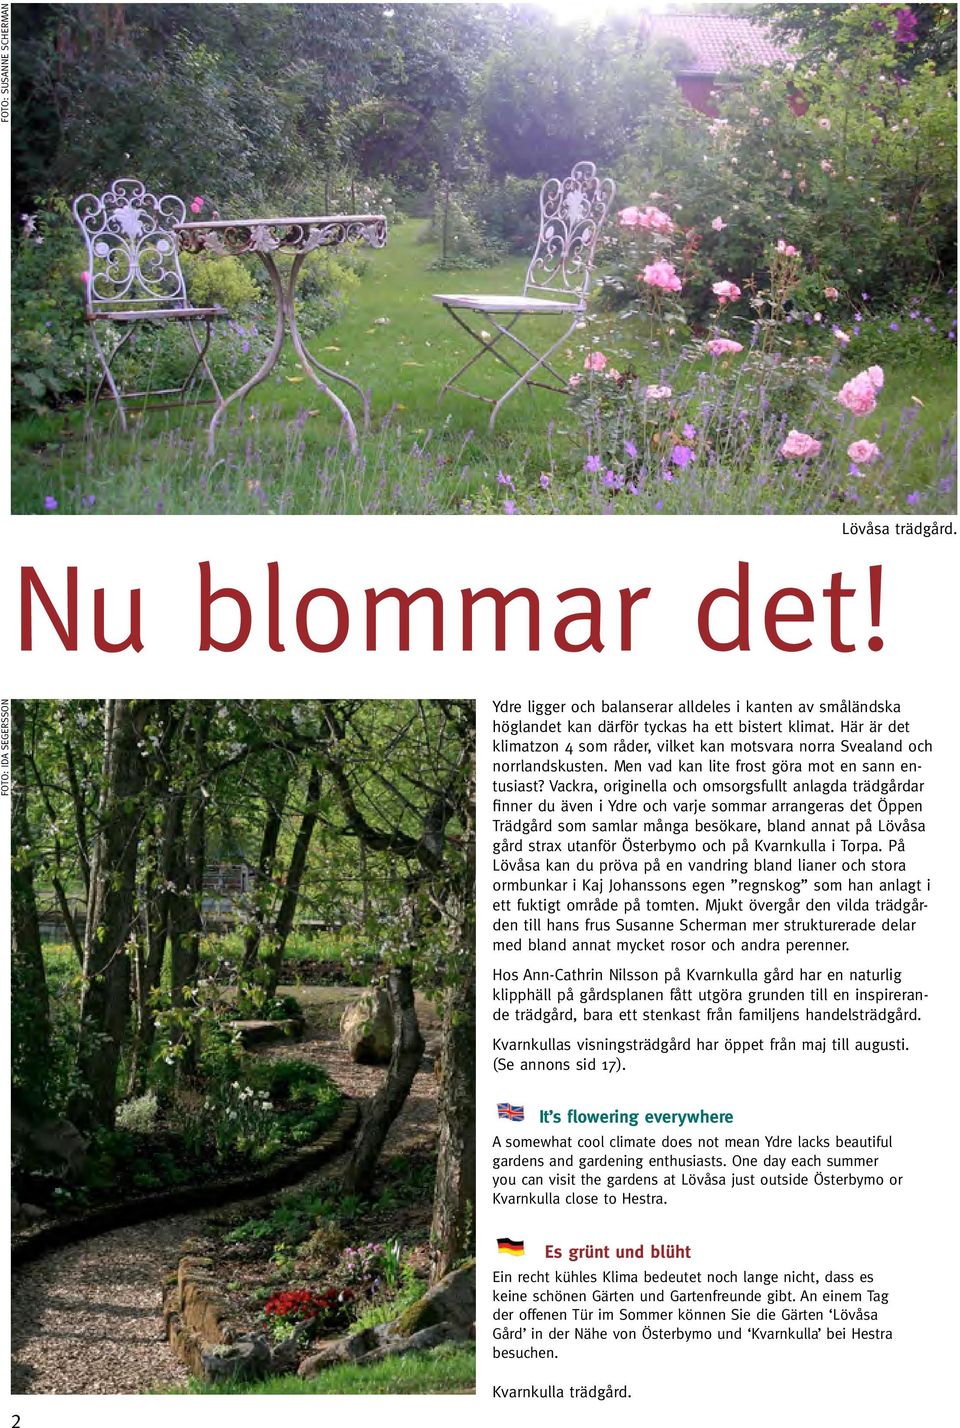 Vackra, originella och omsorgsfullt anlagda trädgårdar finner du även i Ydre och varje sommar arrangeras det Öppen Trädgård som samlar många besökare, bland annat på Lövåsa gård strax utanför